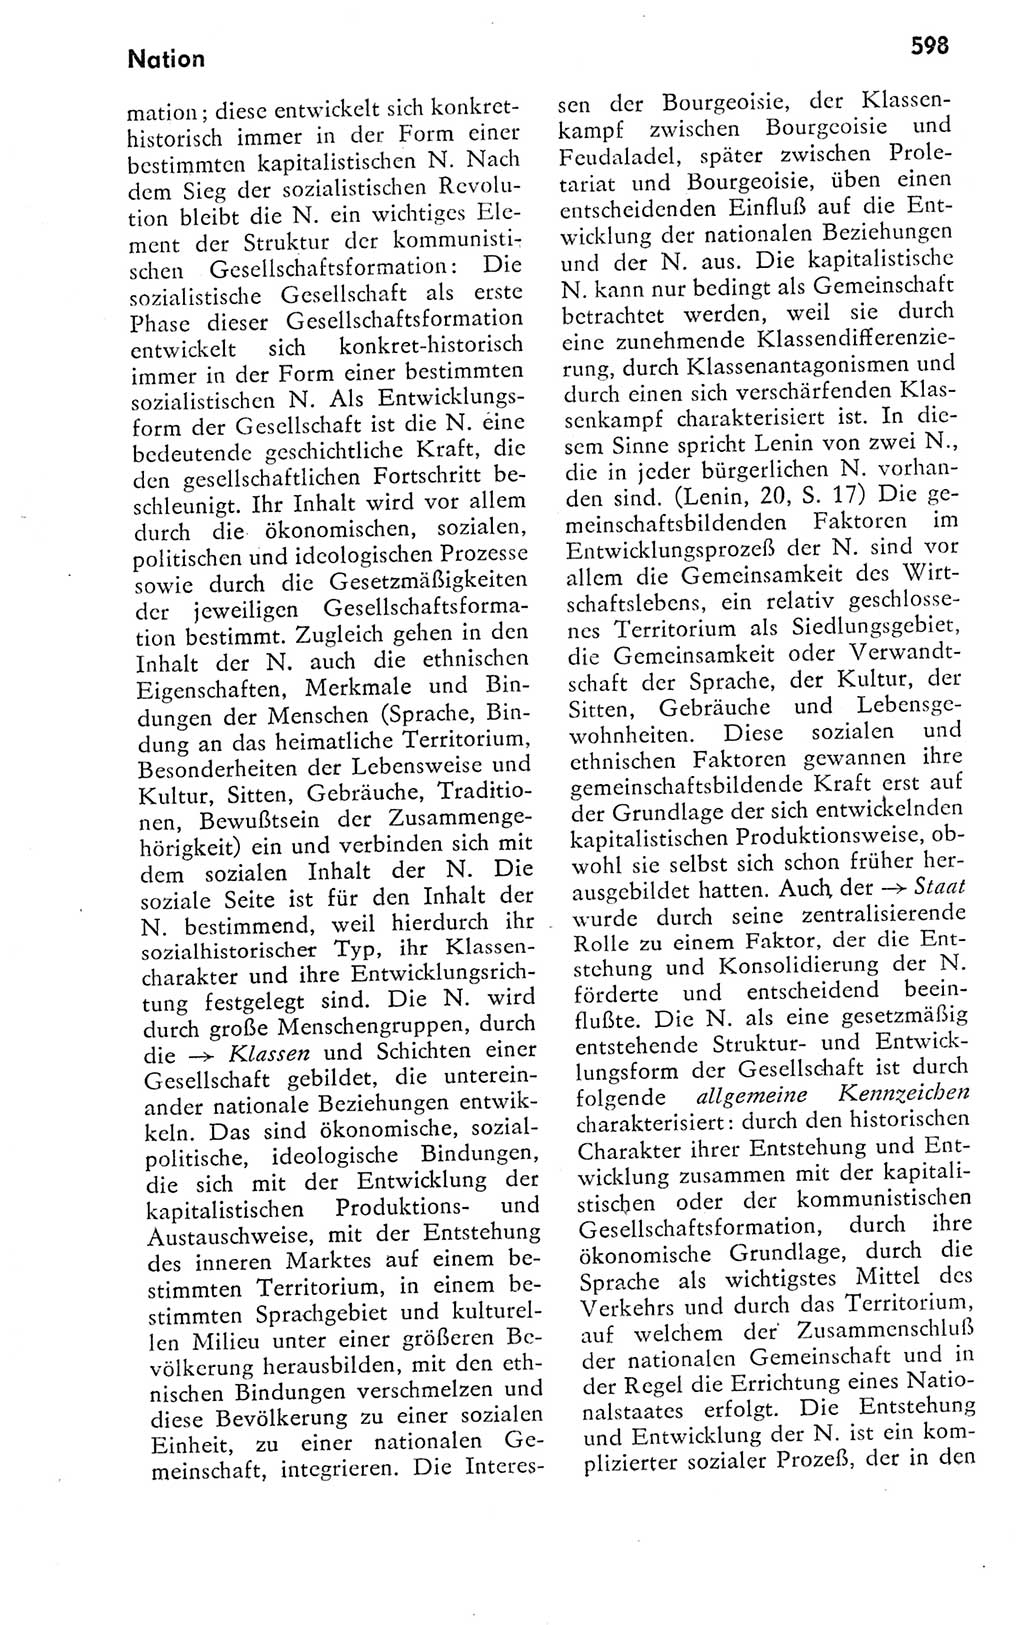 Kleines politisches Wörterbuch [Deutsche Demokratische Republik (DDR)] 1978, Seite 598 (Kl. pol. Wb. DDR 1978, S. 598)